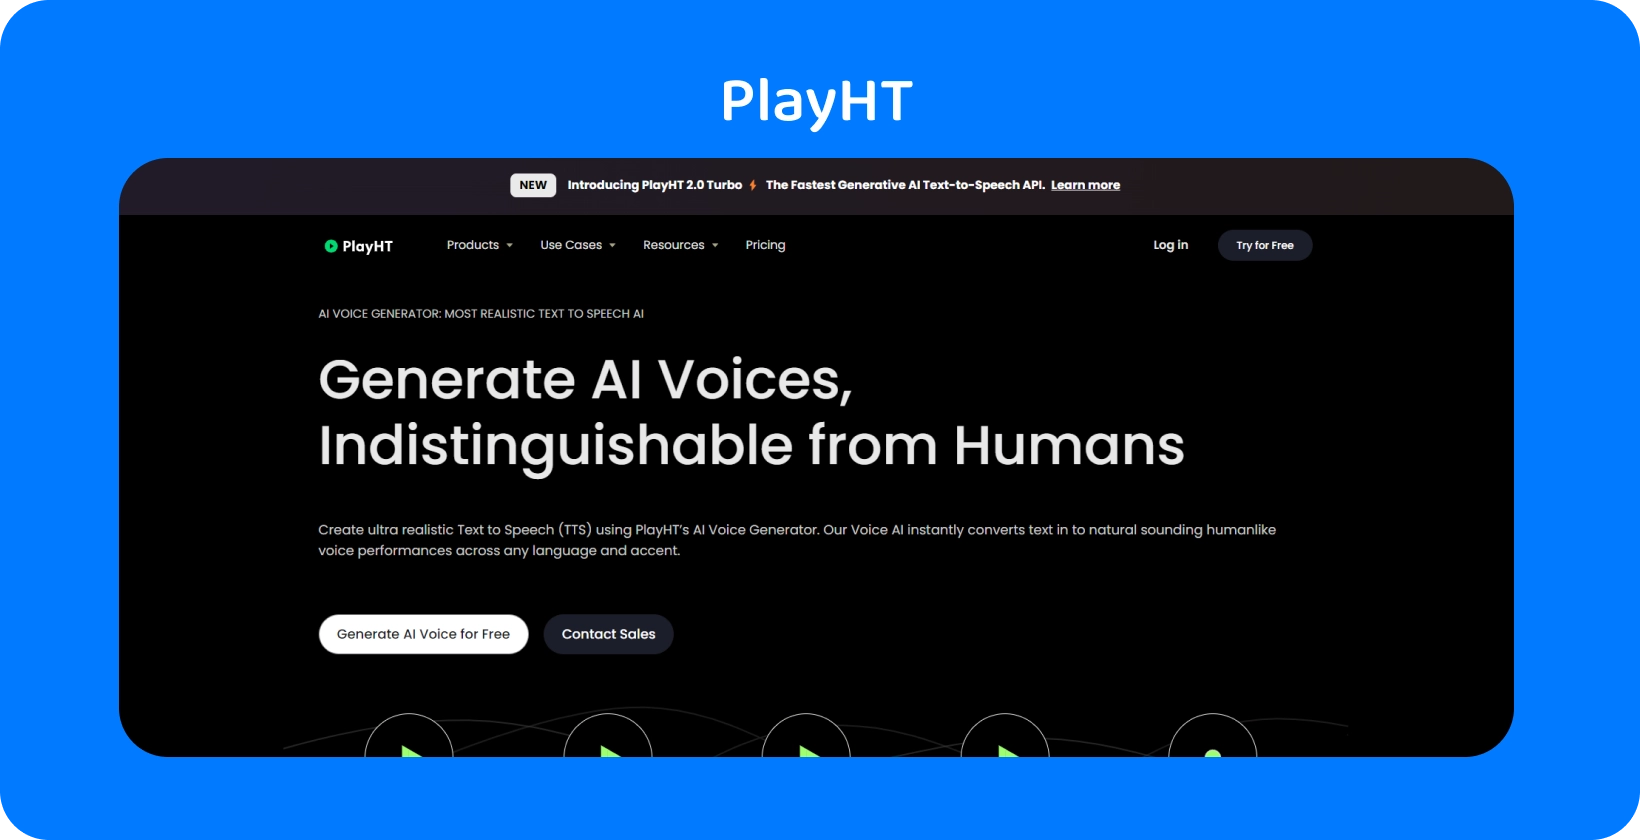 PlayHT ofrece voces generadas por AI casi indistinguibles del habla humana para las necesidades de texto a voz.